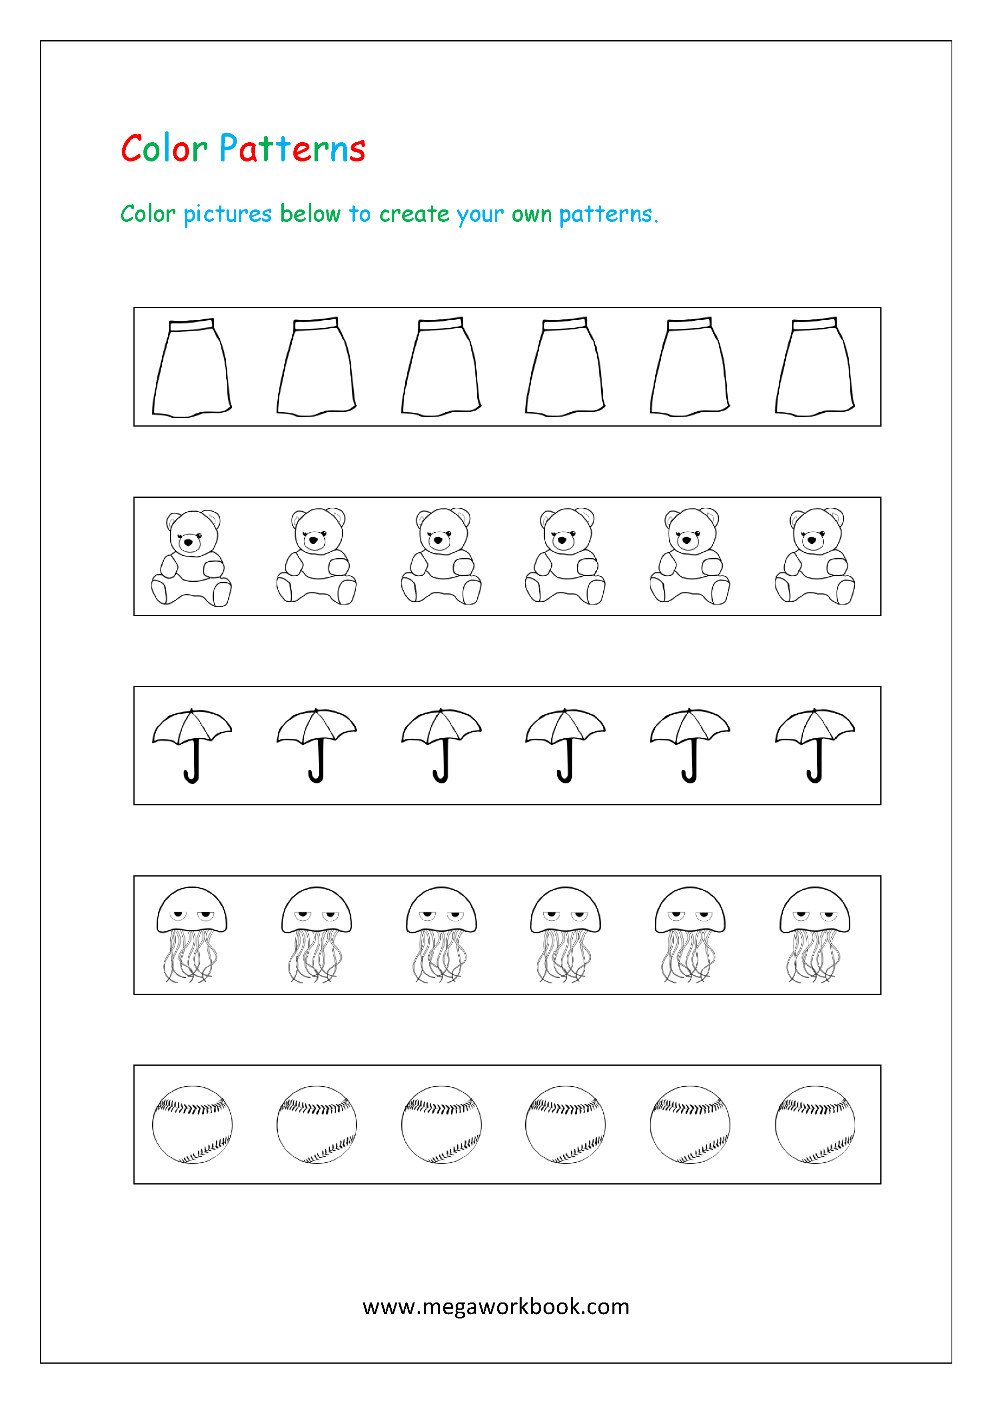 patterns for preschool patterns for kindergarten pattern worksheets for preschool pattern worksheets for kindergarten kindergarten pattern worksheet megaworkbook